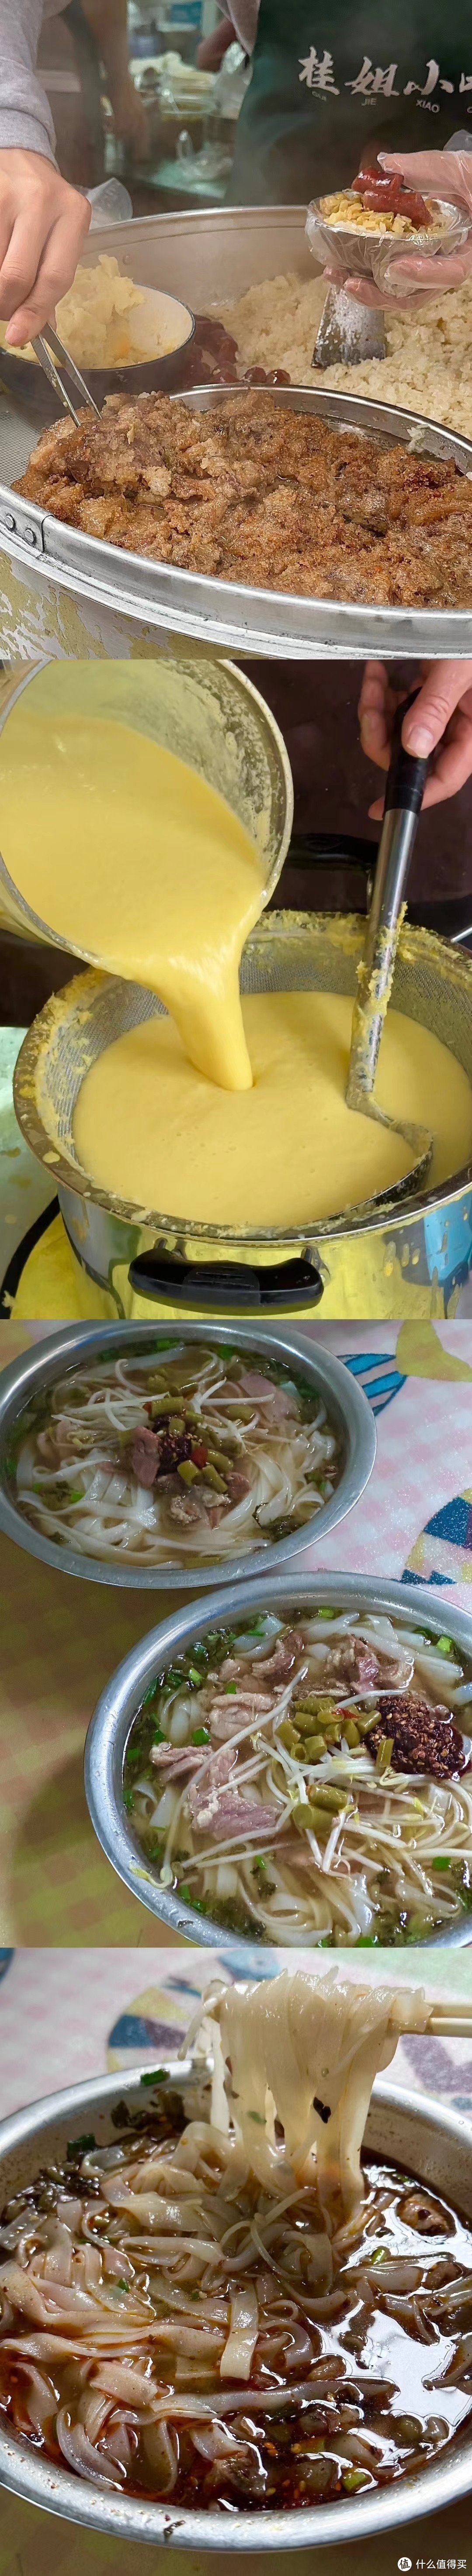 极限挑战特种兵式旅游之第二站_「食在柳州」